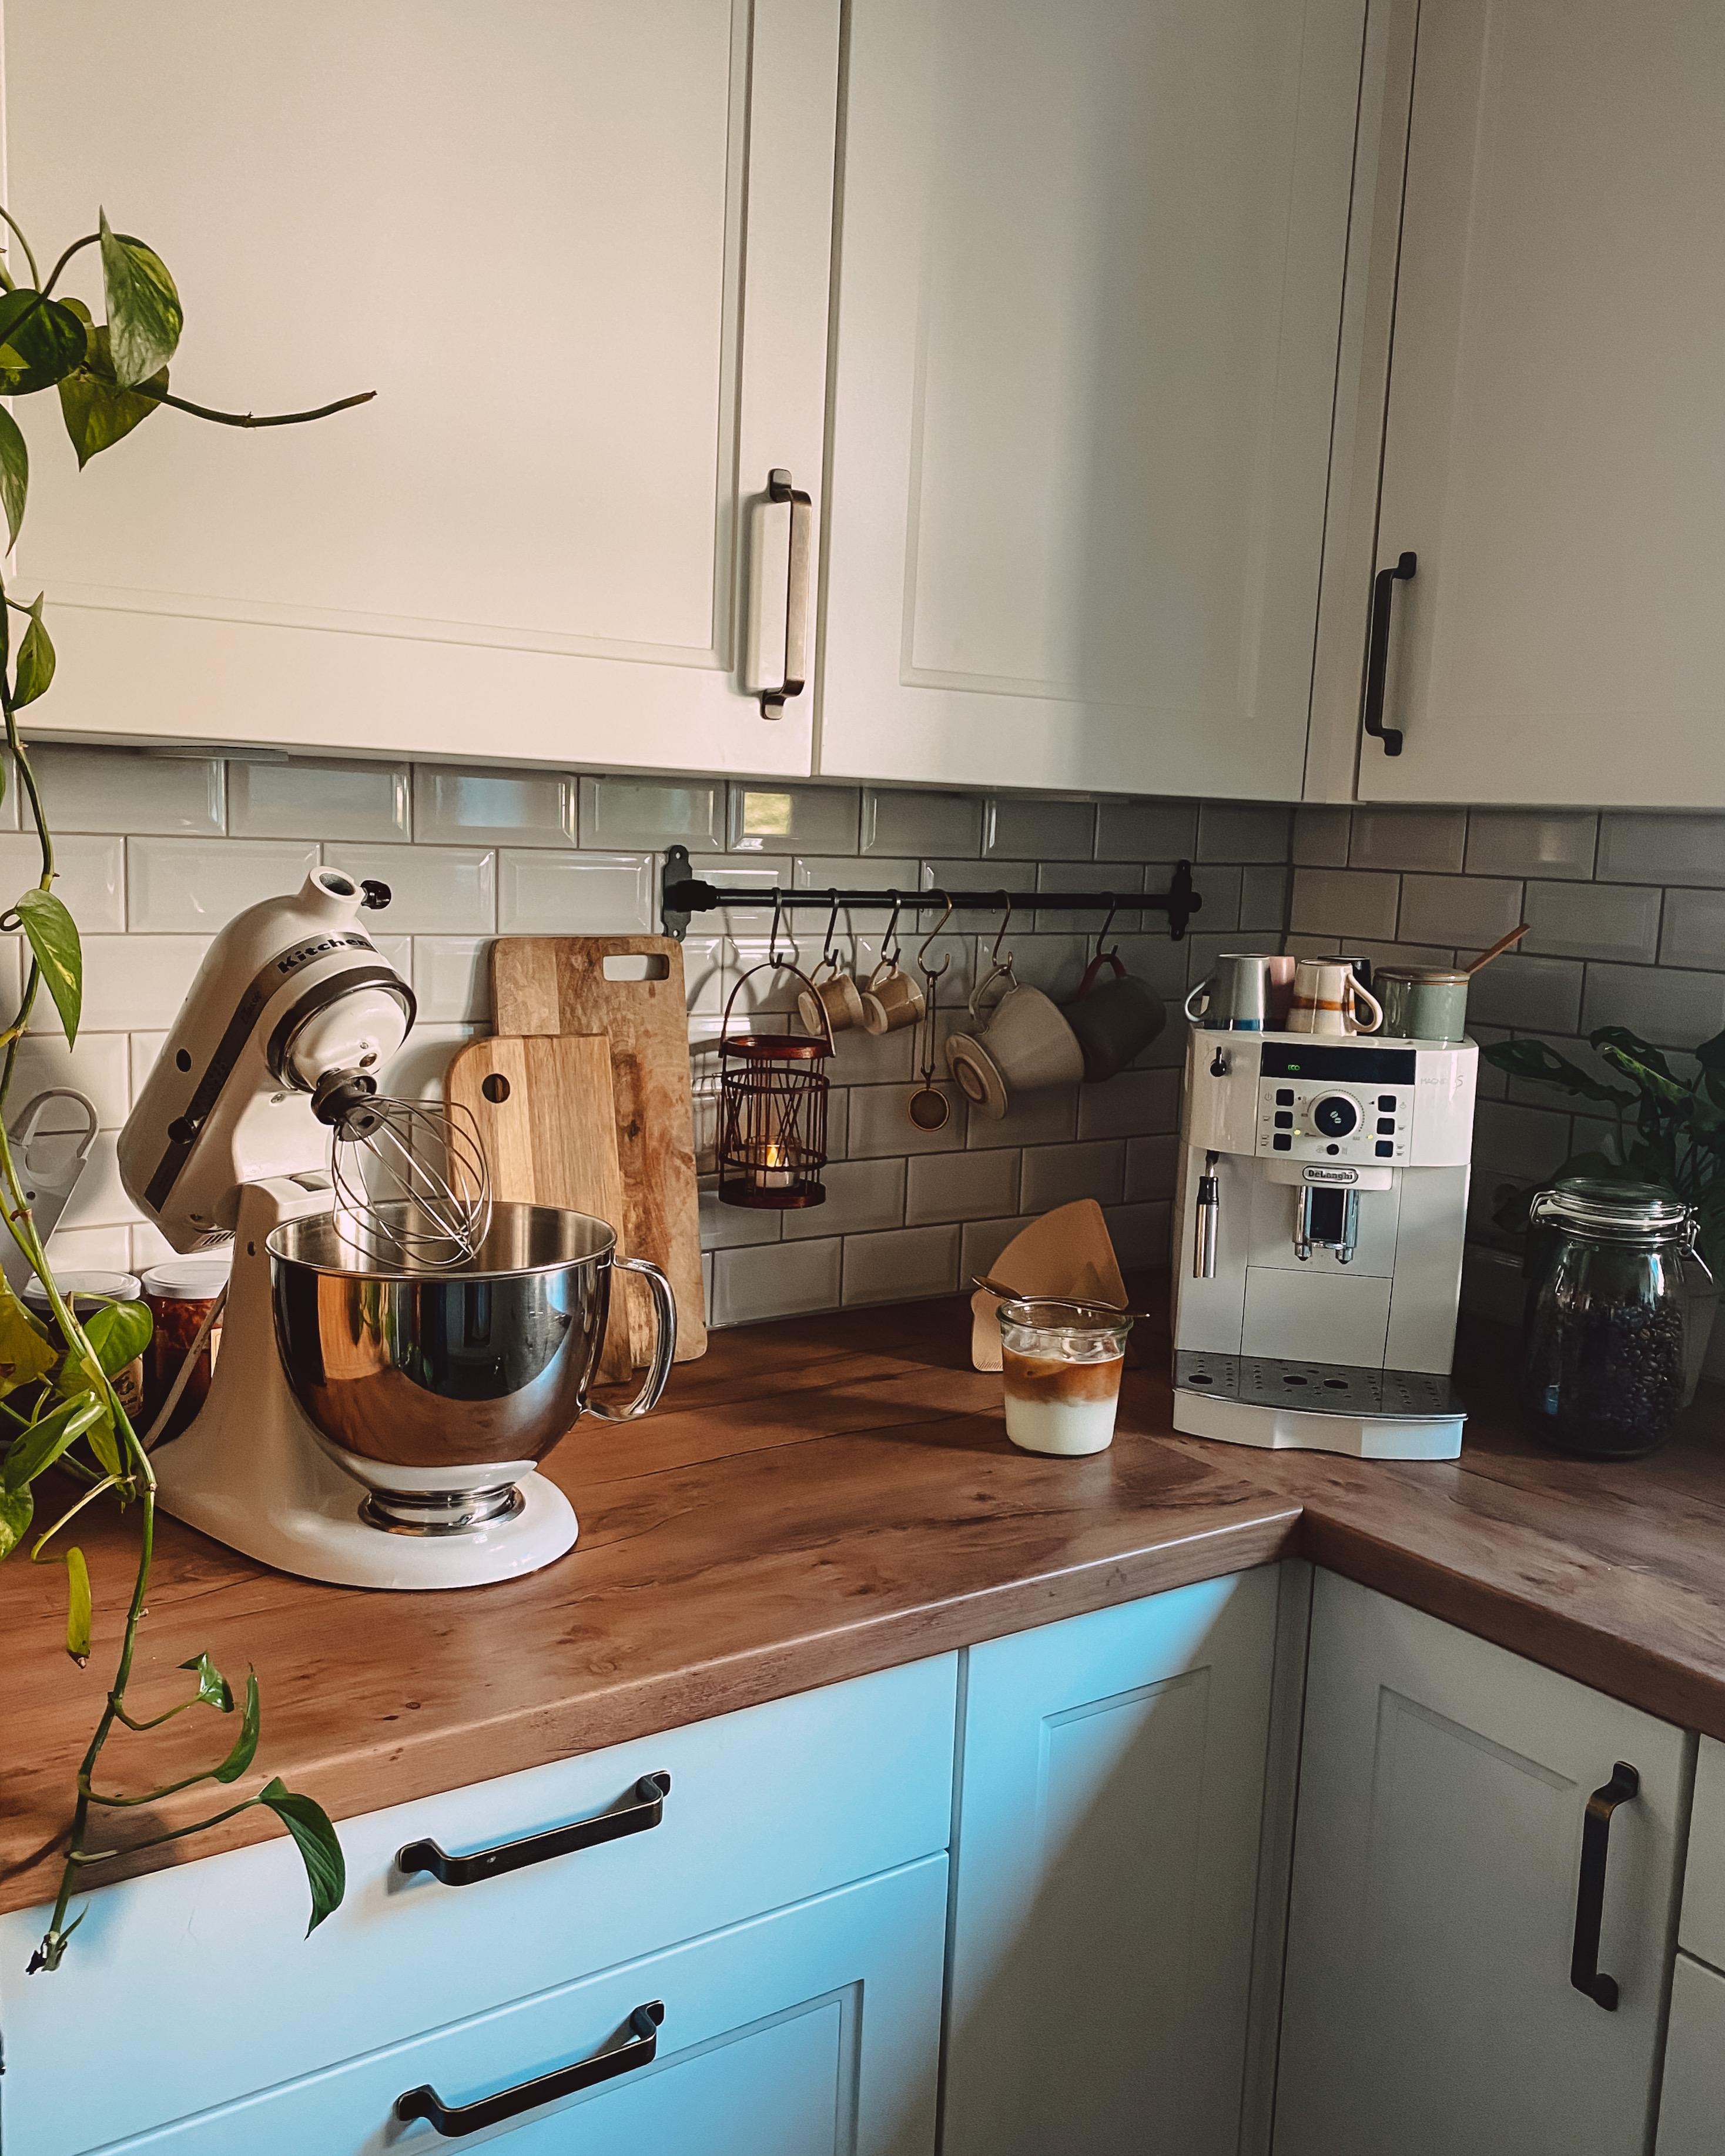 #kaffee #küche #landhausküche #weisseküche #metrofliesen